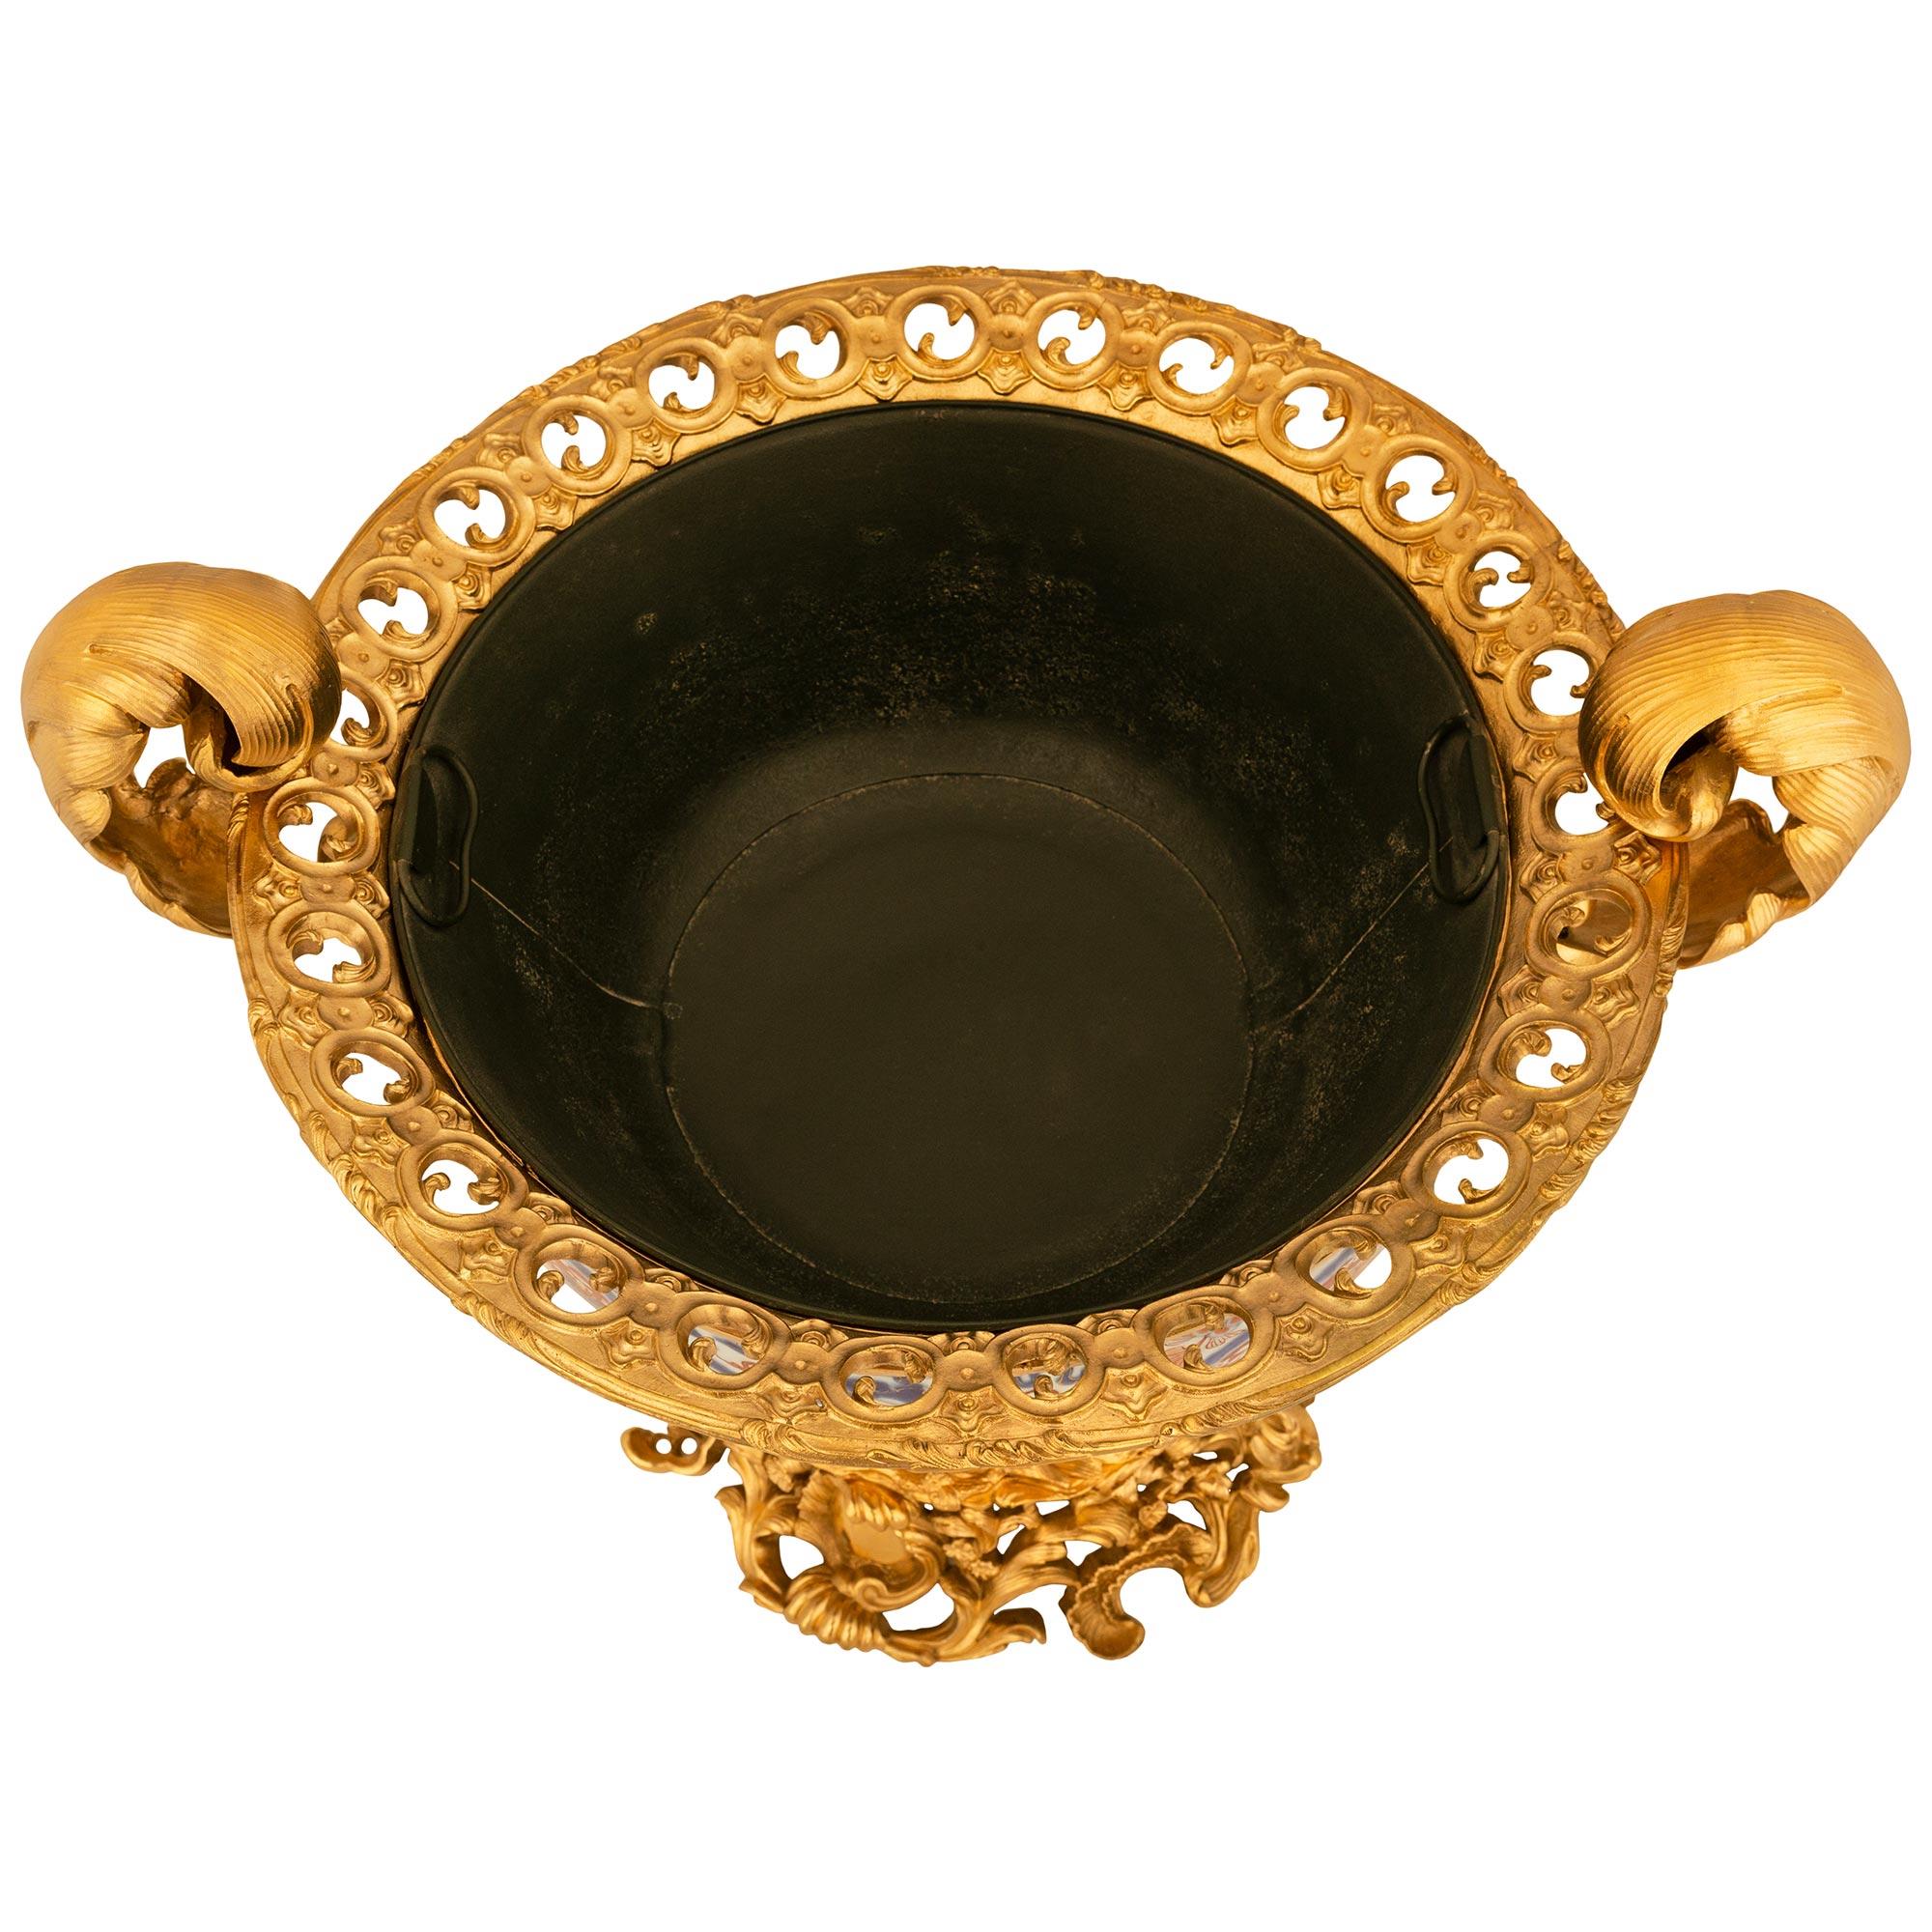 Eine beeindruckende und äußerst dekorative japanische 19. Jahrhundert Imari Porzellan und Französisch Louis XV st. Ormolu Tafelaufsatz / Urne. Dieser atemberaubende Tafelaufsatz wird von einem runden, durchbrochenen Ormolu-Sockel mit Rocaille- und